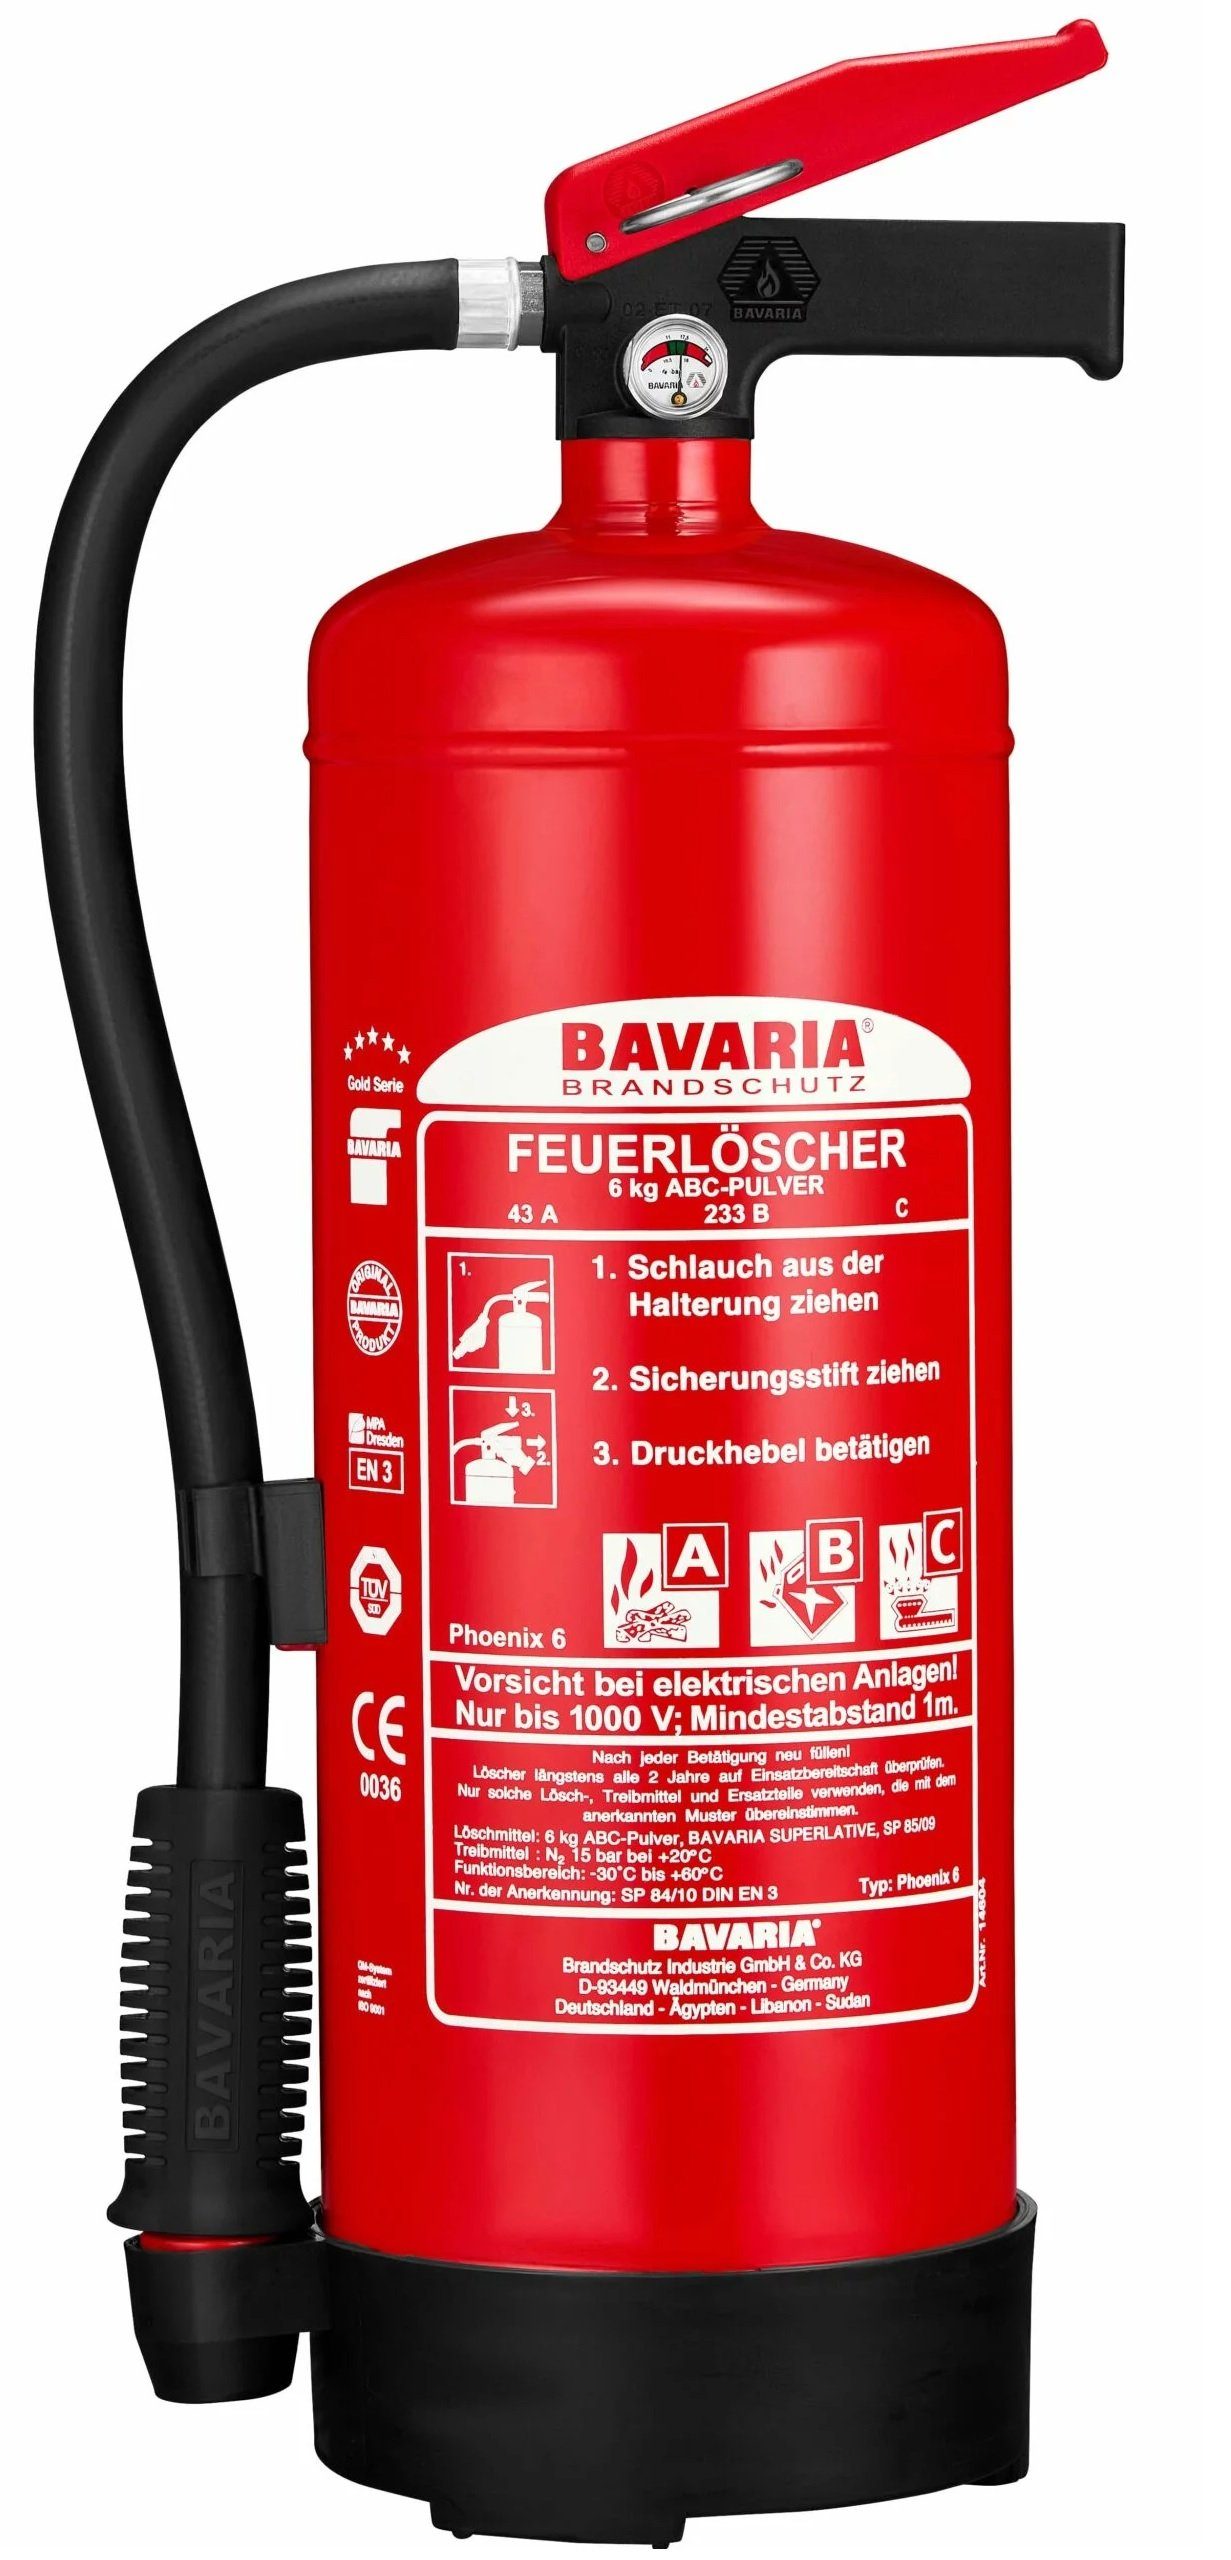 BAVARIA Brandschutz GmbH & Co.KG Pulver-Feuerlöscher Phoenix 6